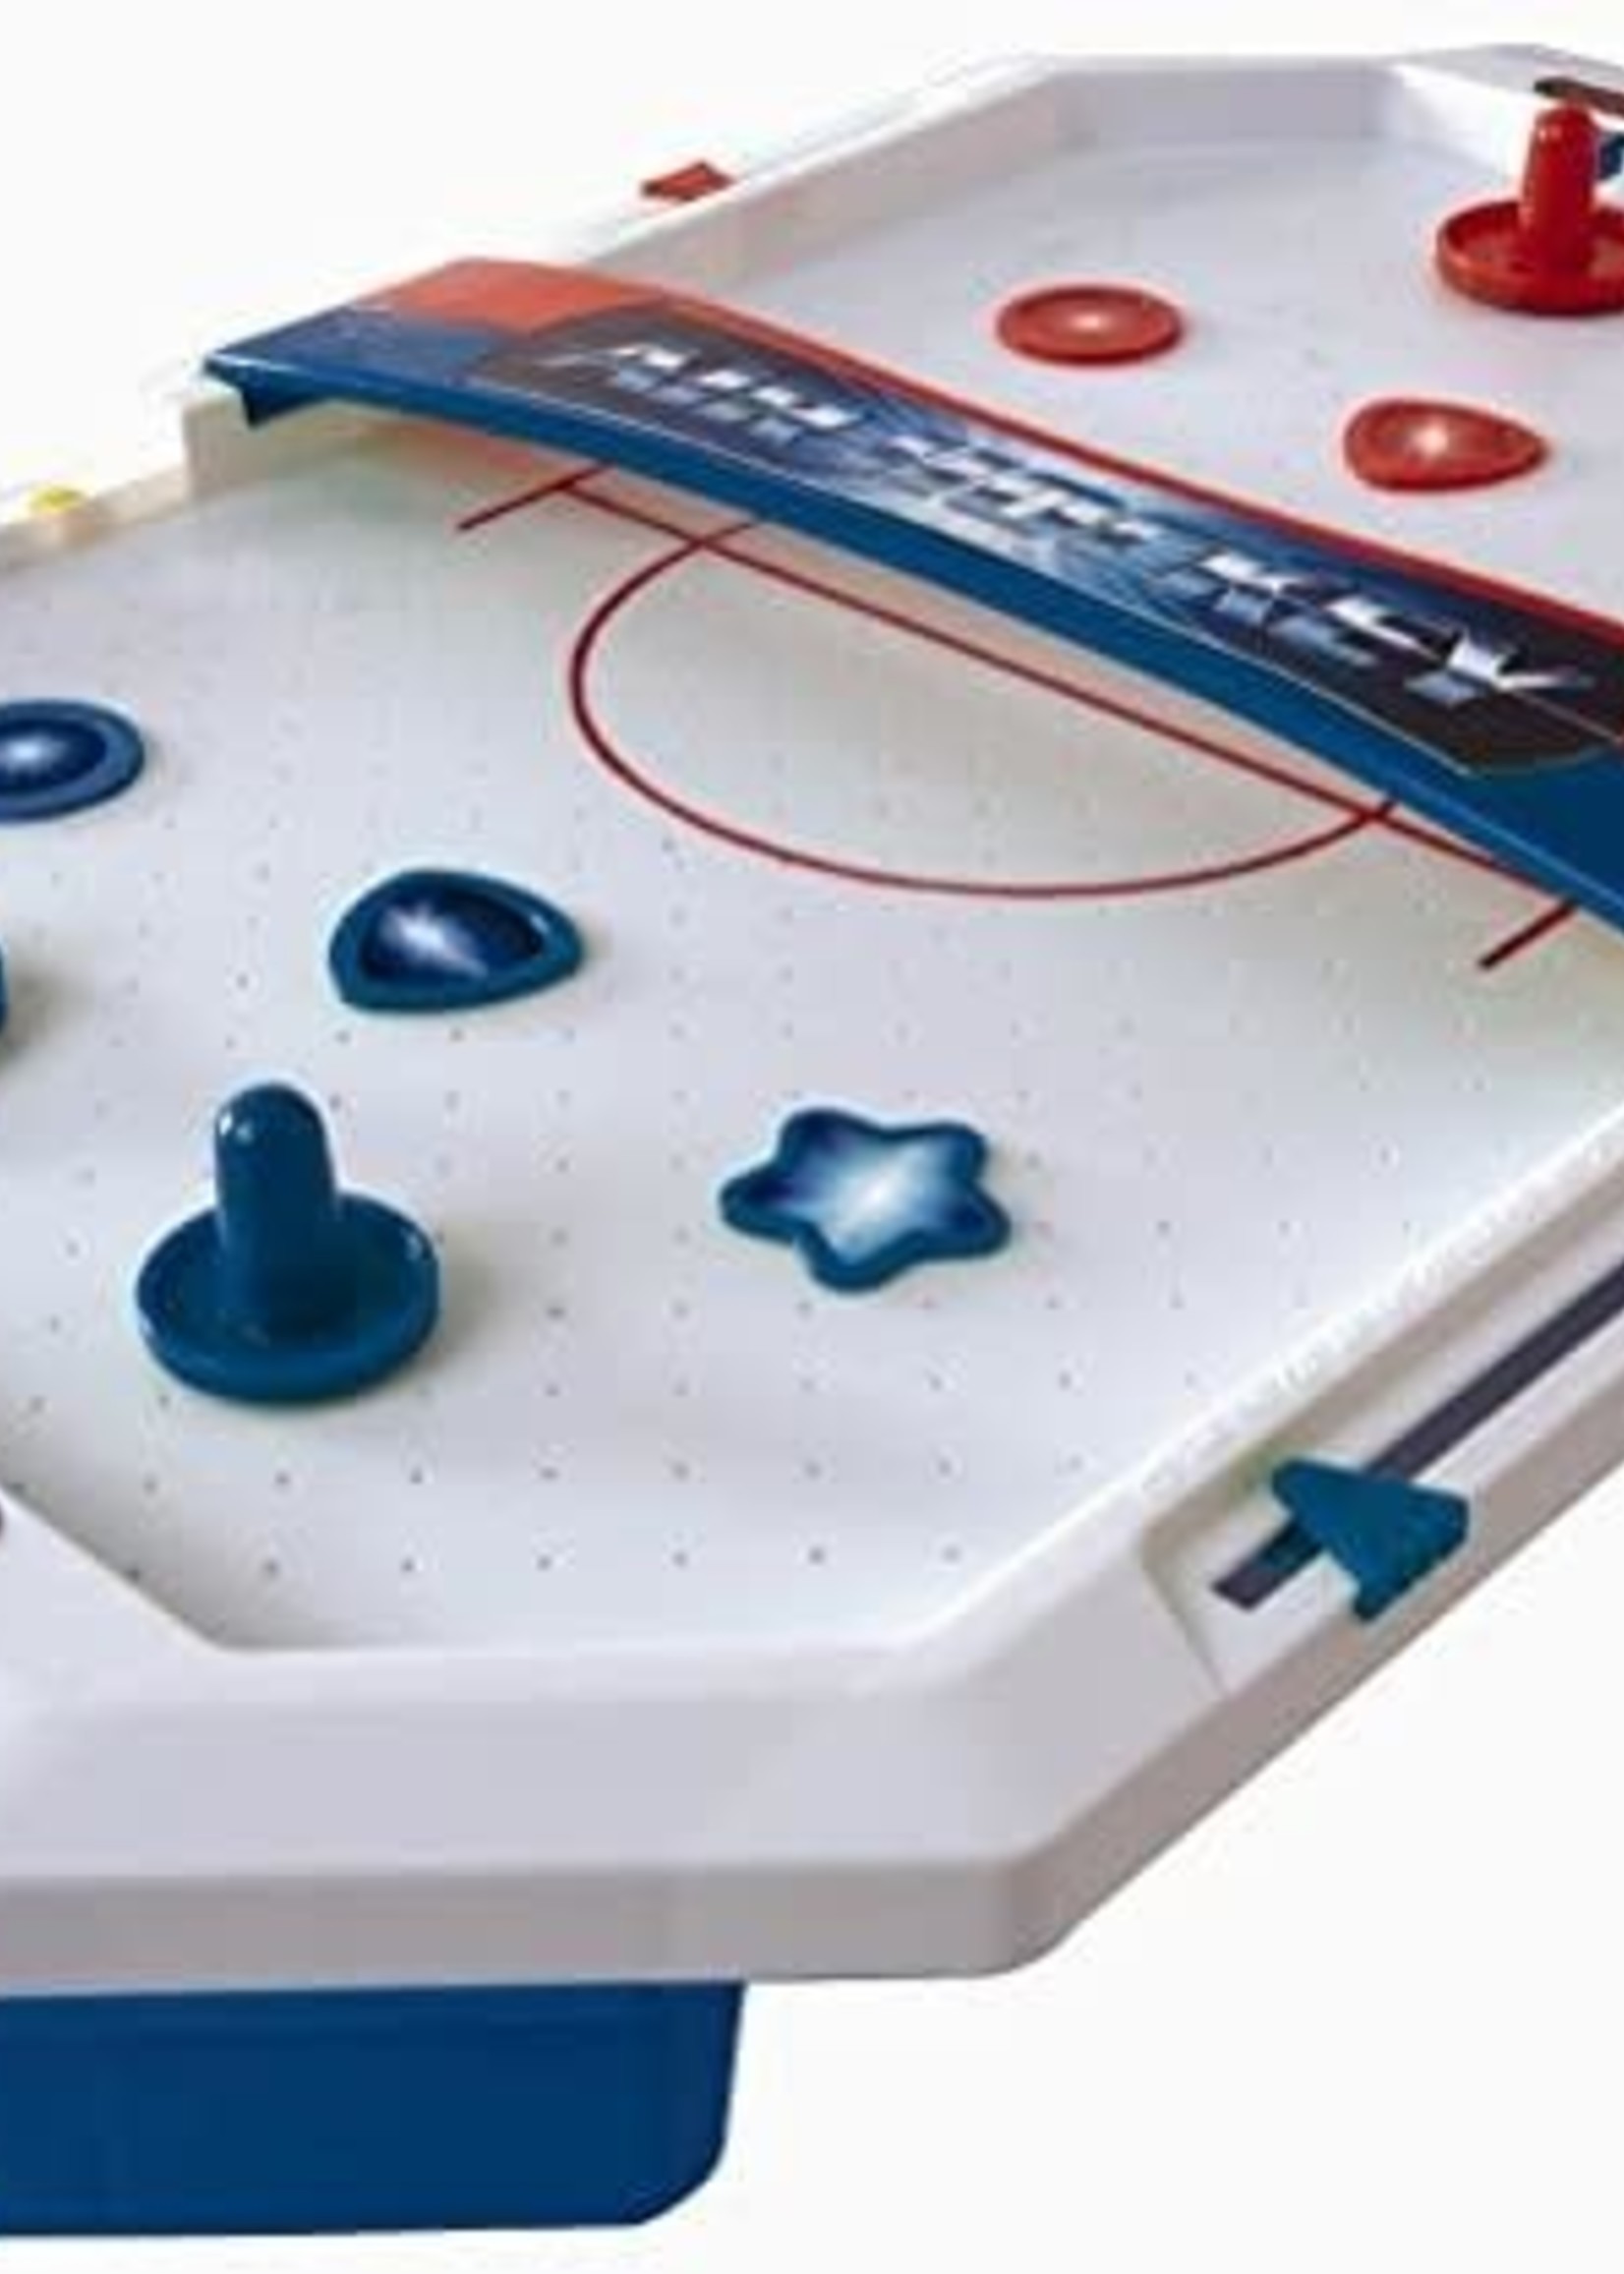 Table-Top Air Hockey